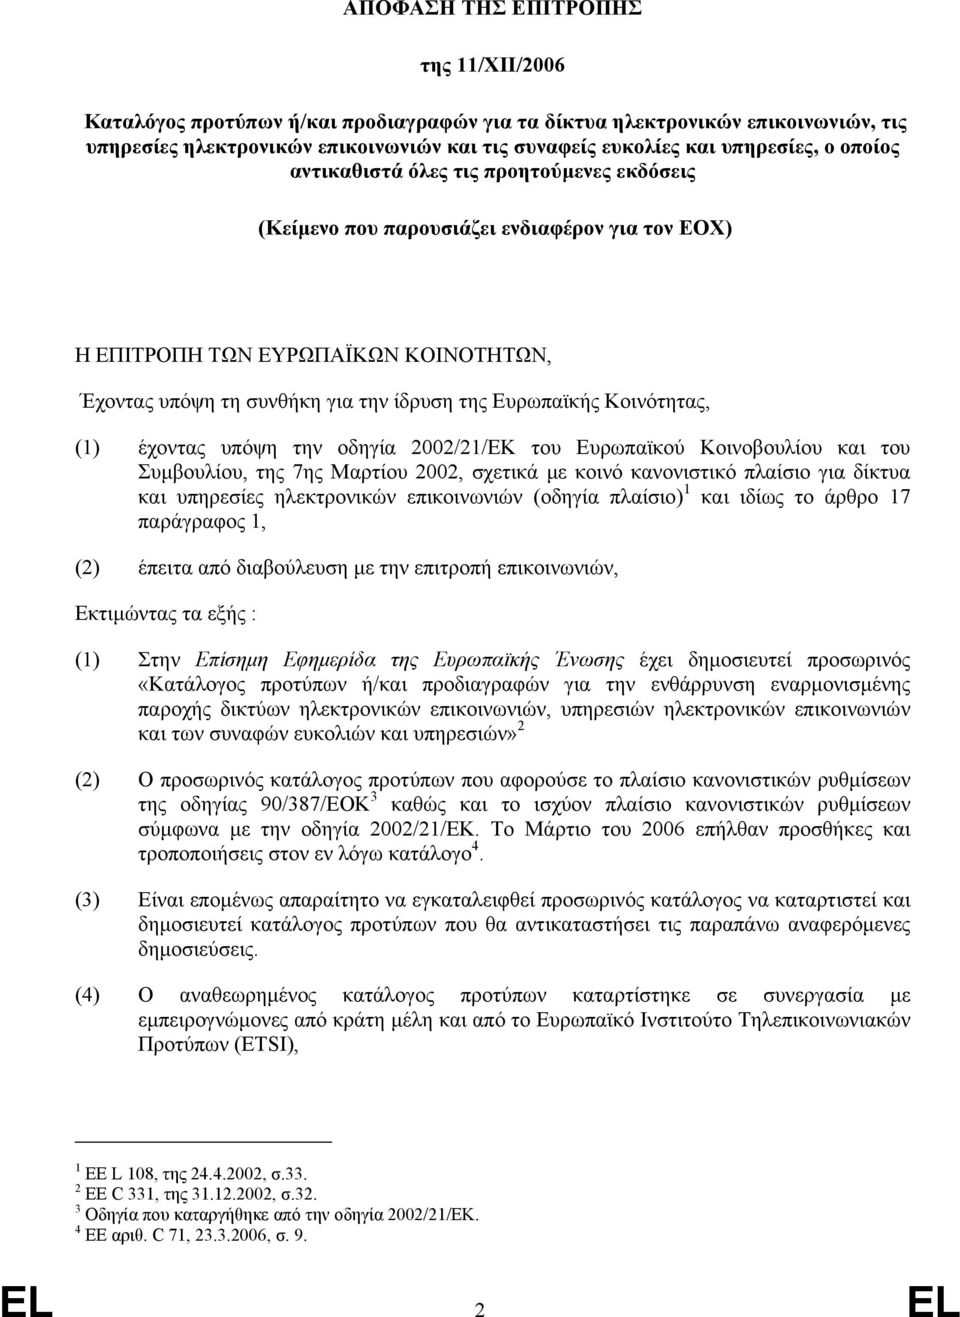 Κοινότητας, (1) έχοντας υπόψη την οδηγία 2002/21/ΕΚ του Ευρωπαϊκού Κοινοβουλίου και του Συµβουλίου, της 7ης Μαρτίου 2002, σχετικά µε κοινό κανονιστικό πλαίσιο για δίκτυα και υπηρεσίες ηλεκτρονικών